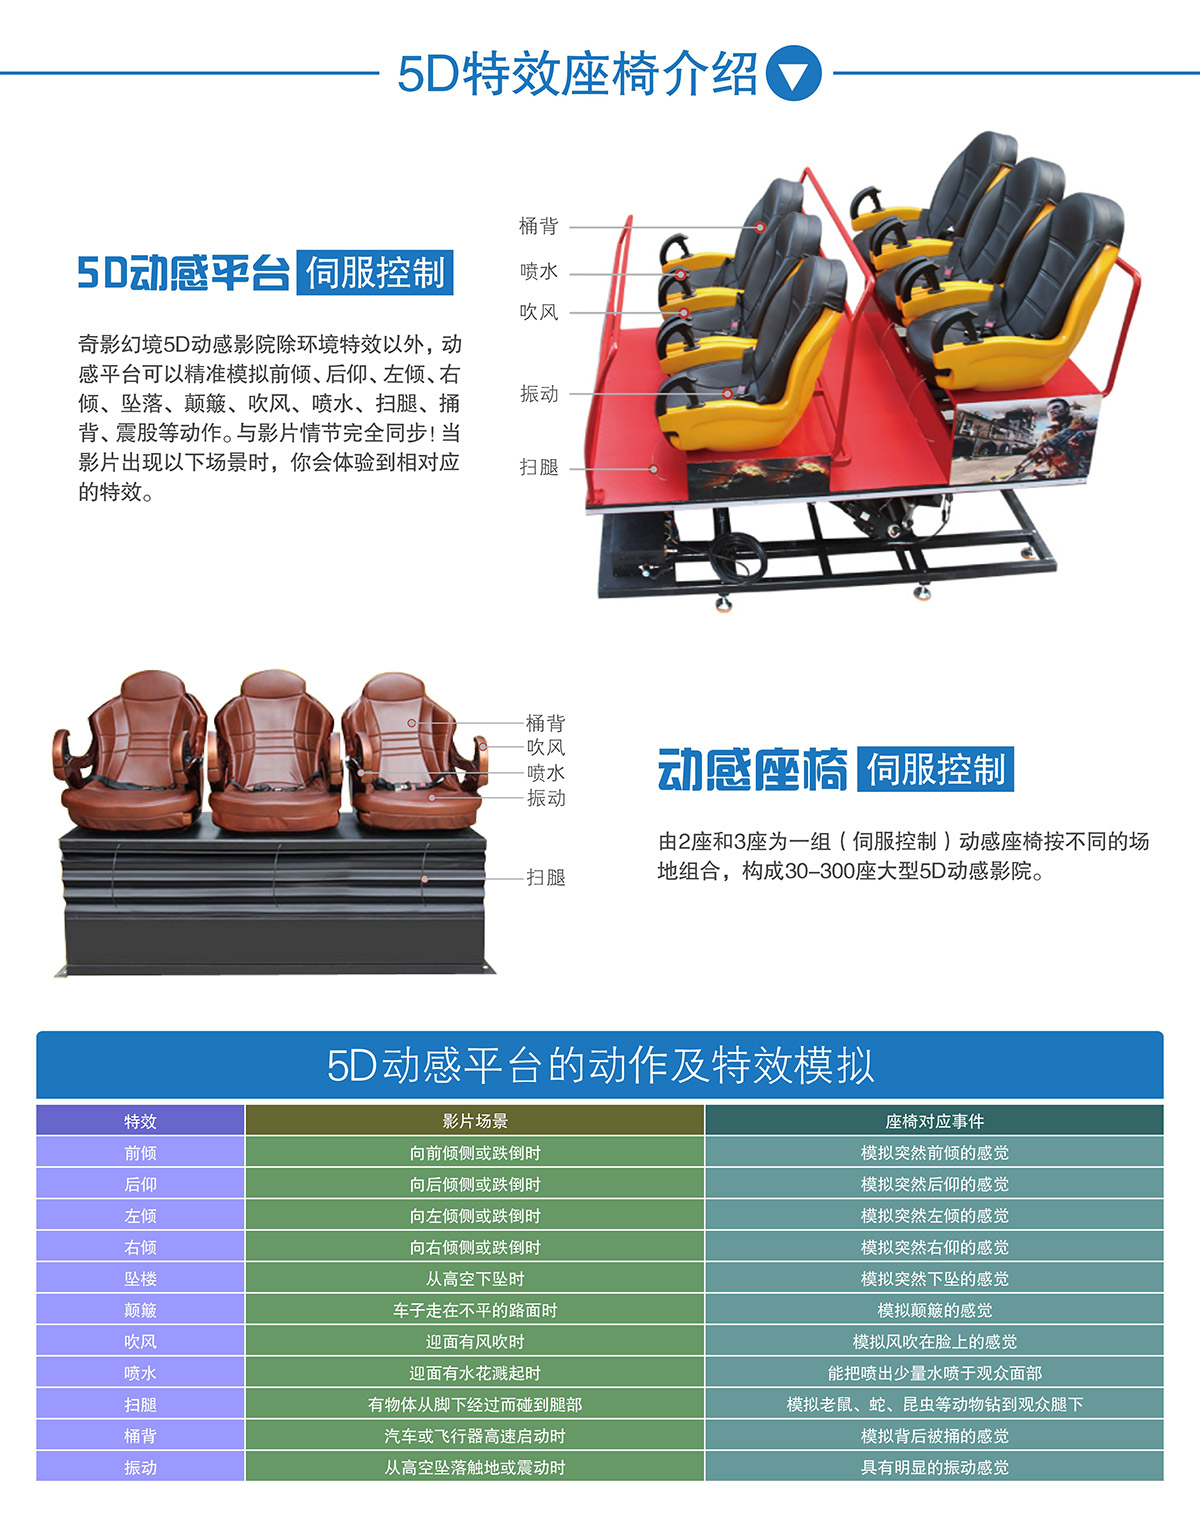 广东省广州奇影幻境中大型5D动感特效座椅介绍.jpg